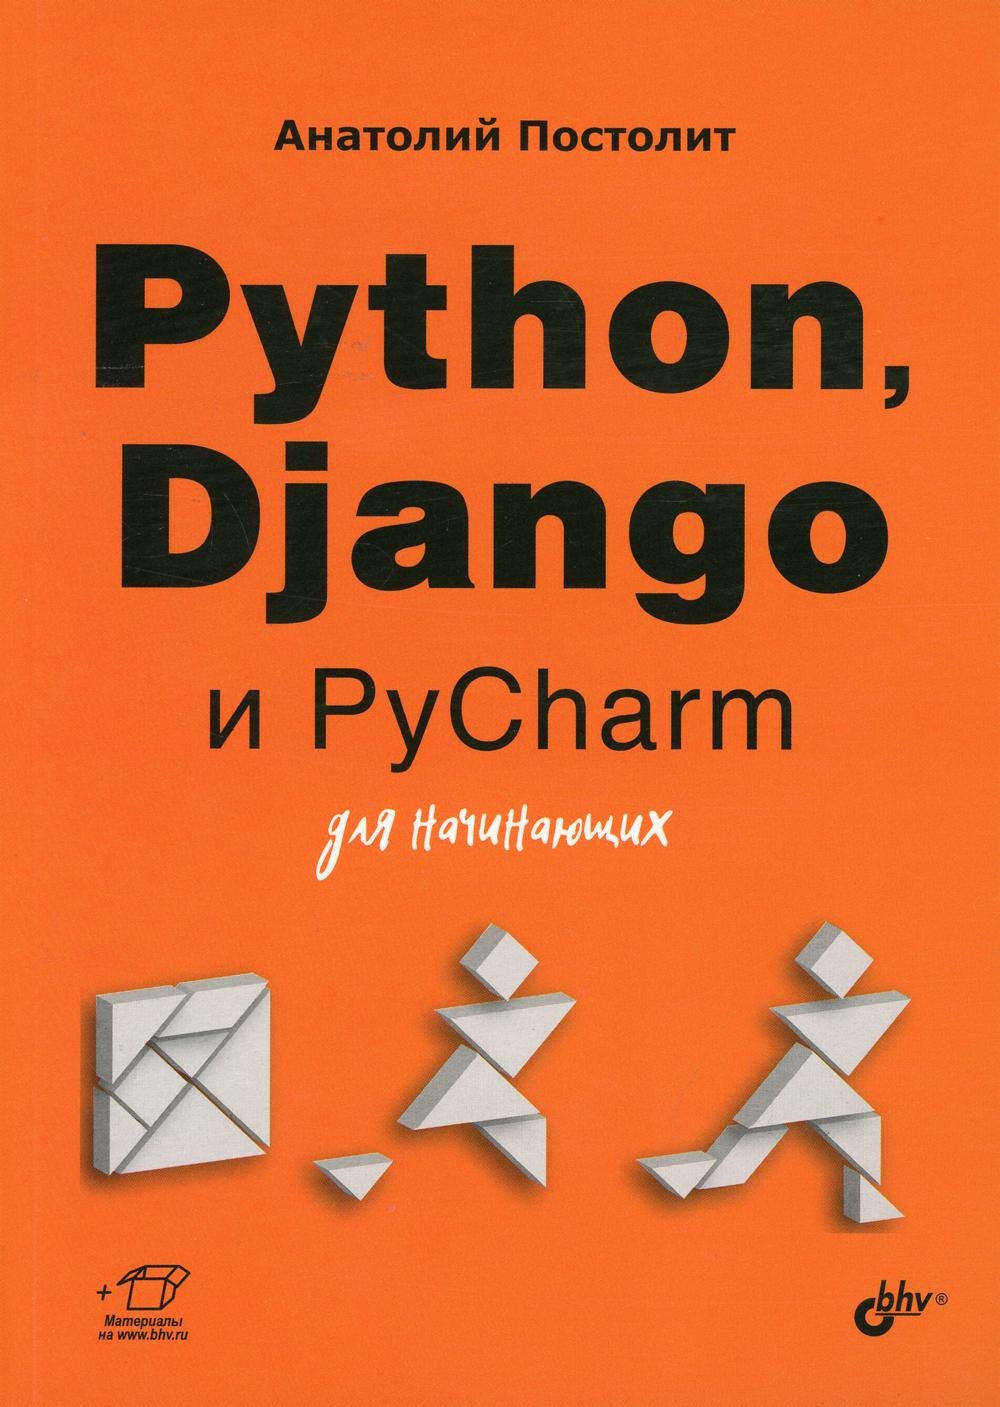 фото Книга python, django и pycharm для начинающих bhv(бхв)